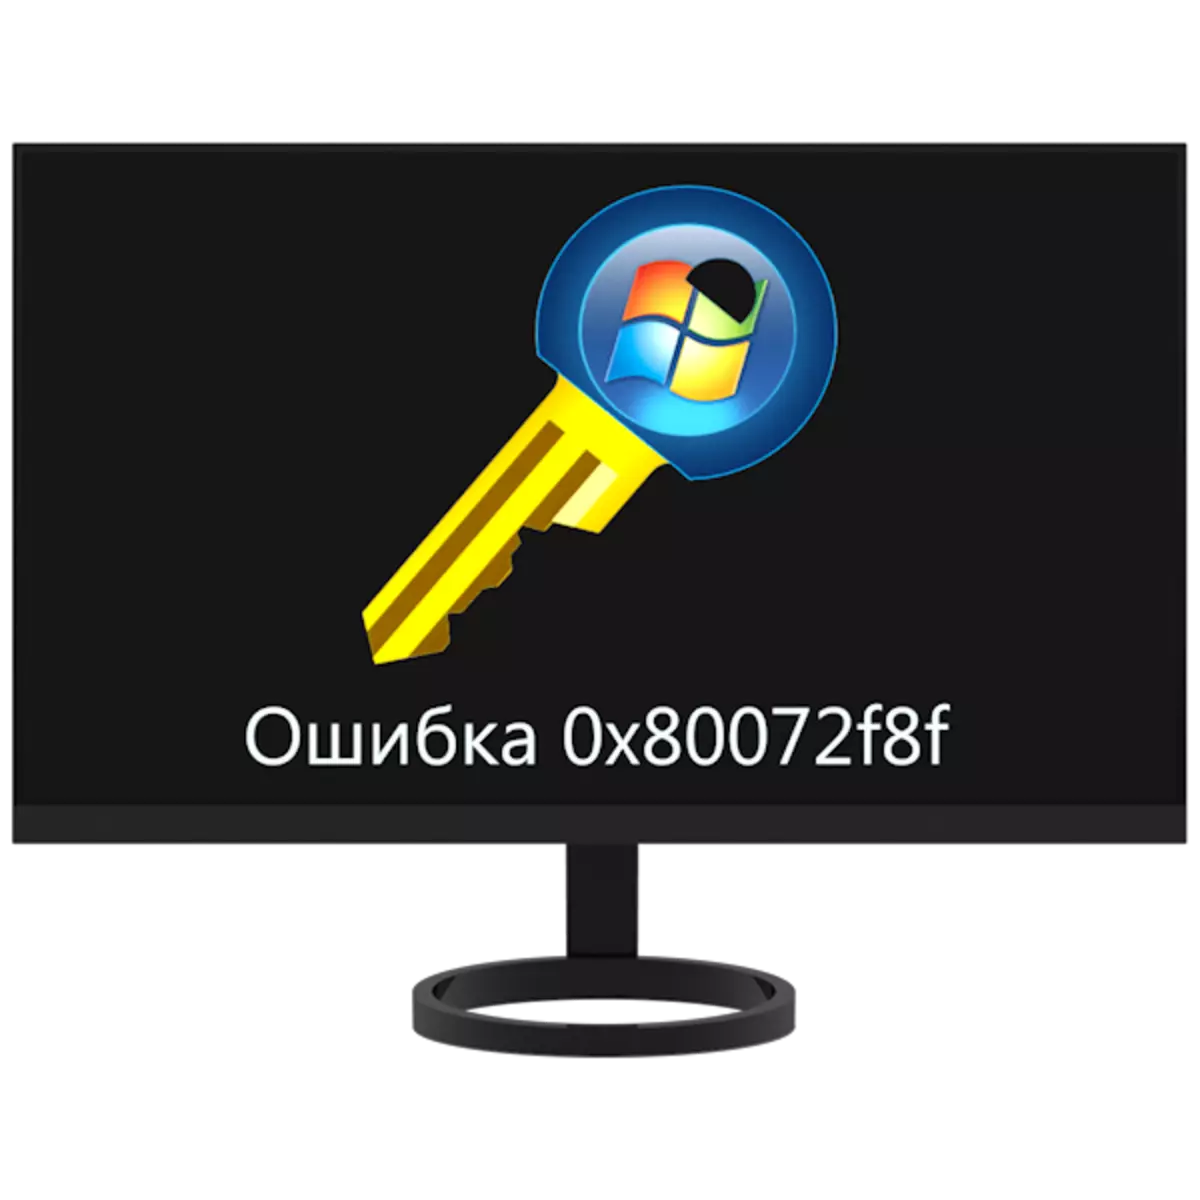 Zolakwika 0x80072F8F mukayambitsa Windows 7